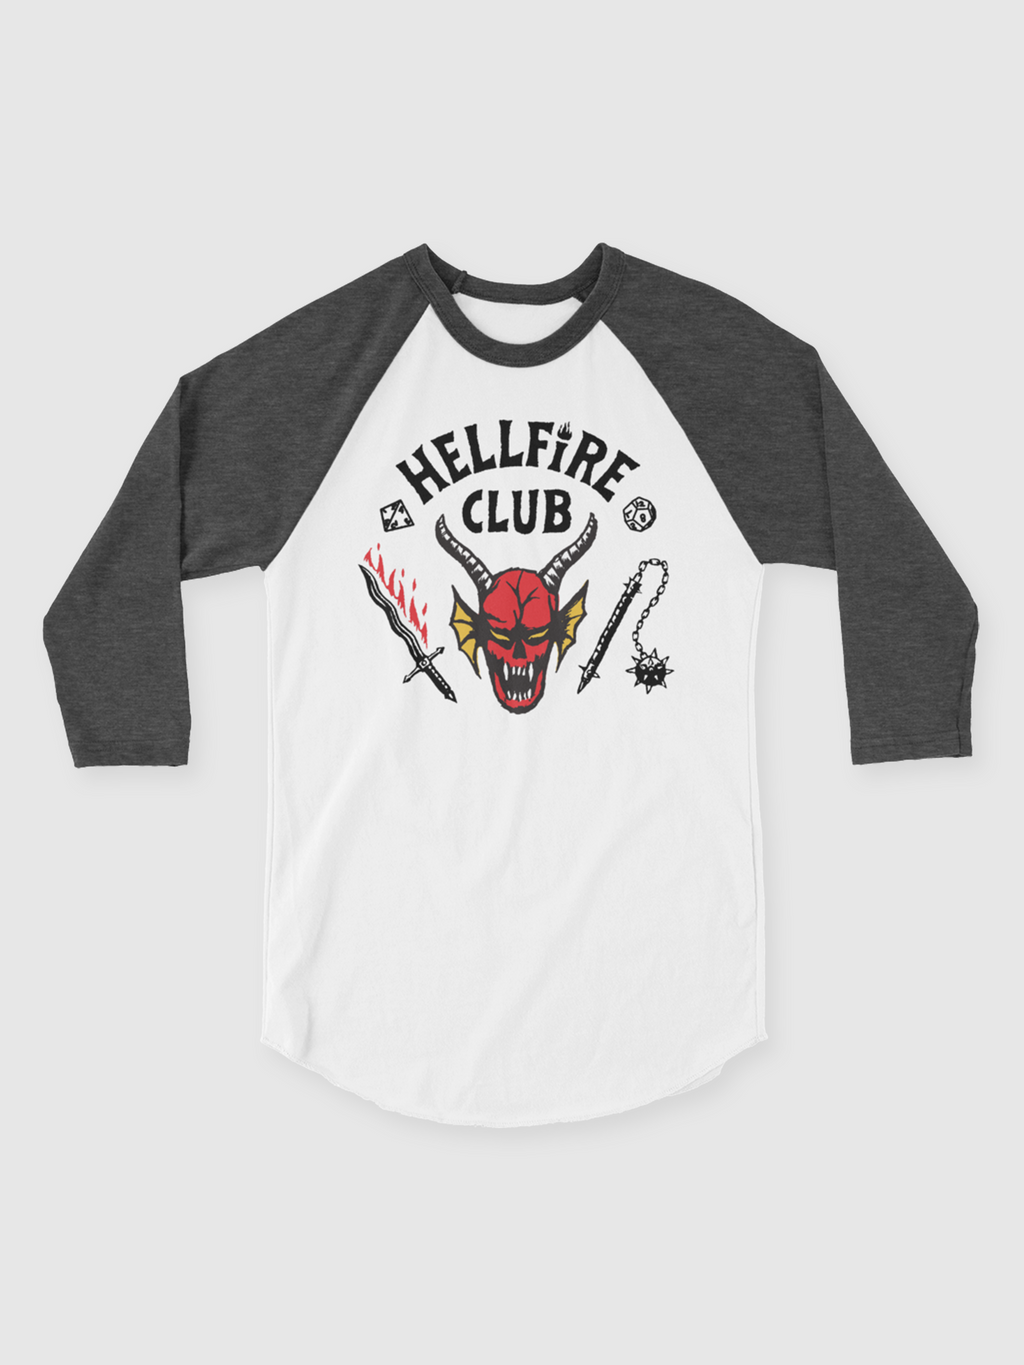 Dustin Hellfire Club T-Shirt Season 4 Stranger Tops Bangladesh